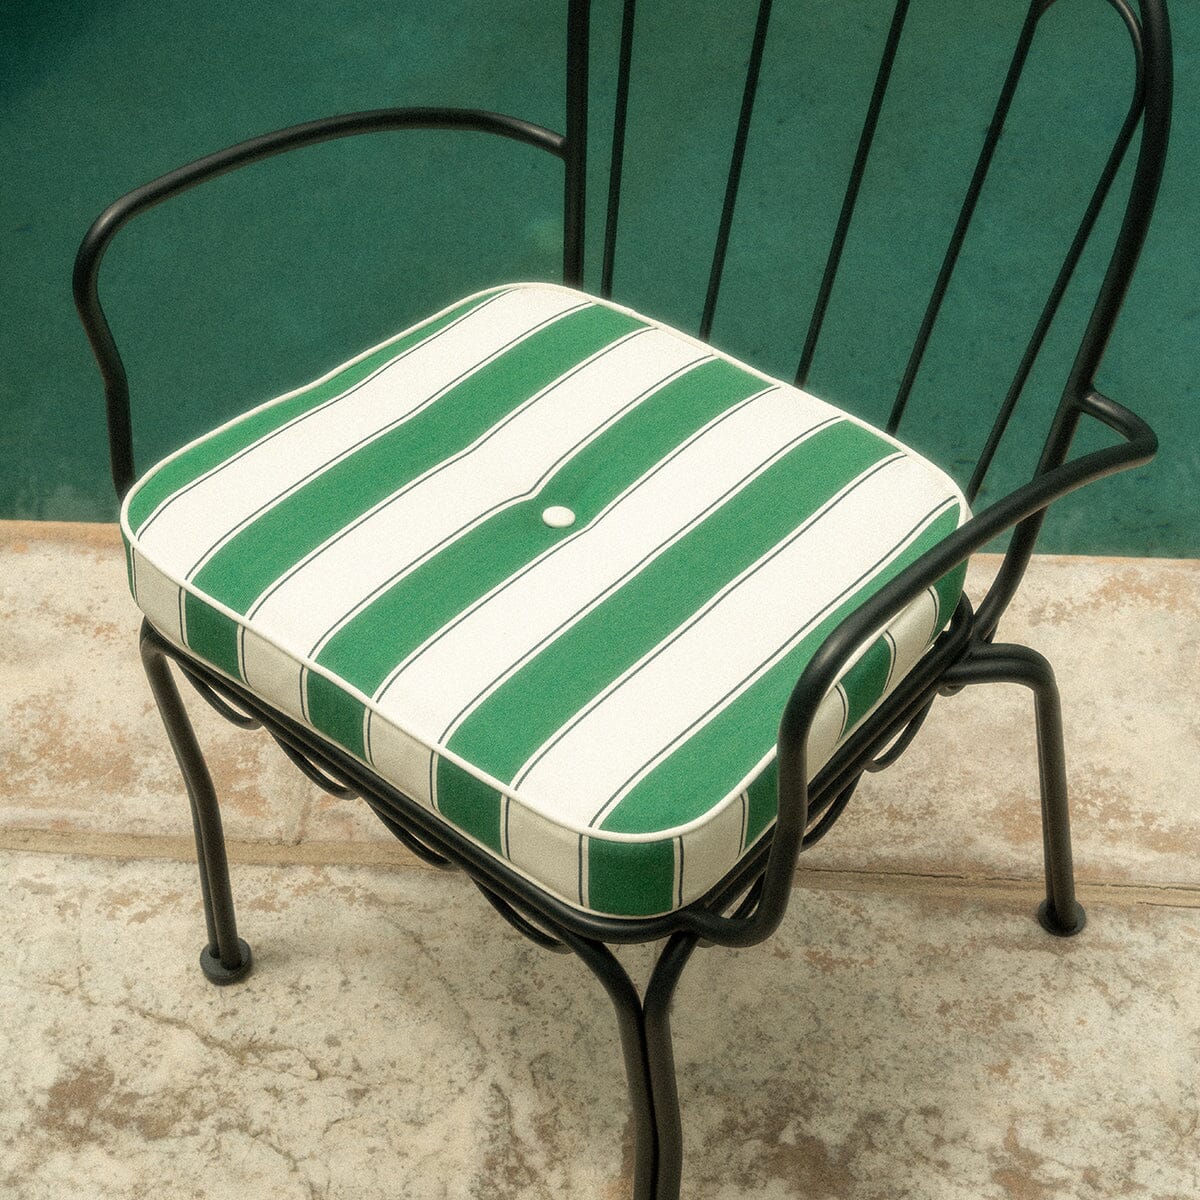 The Al Fresco Chair Cushion - STAUD Stripe Al Fresco Chair Cushion Business & Pleasure Co Aus 